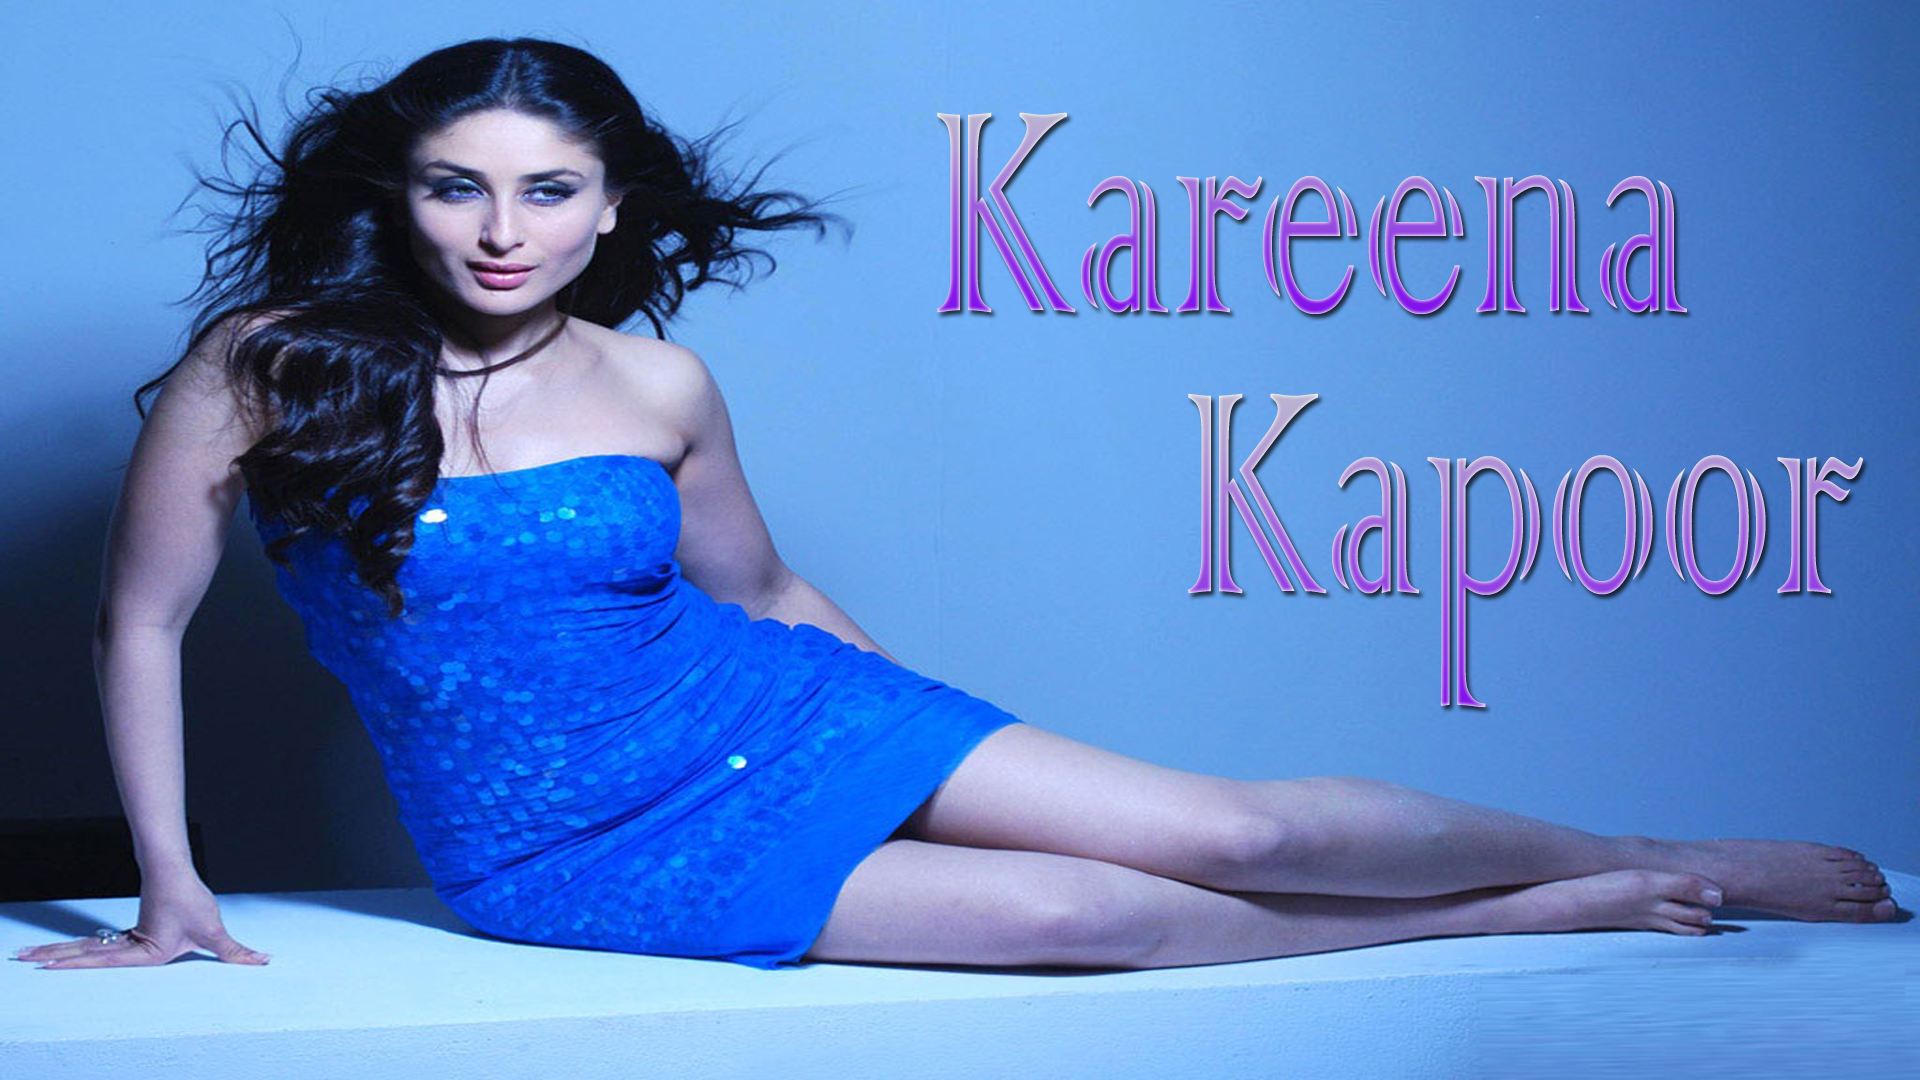 Kareena Kapoor wallpaper,kareena kapoor images,latest picture,kareena in blue hot dress